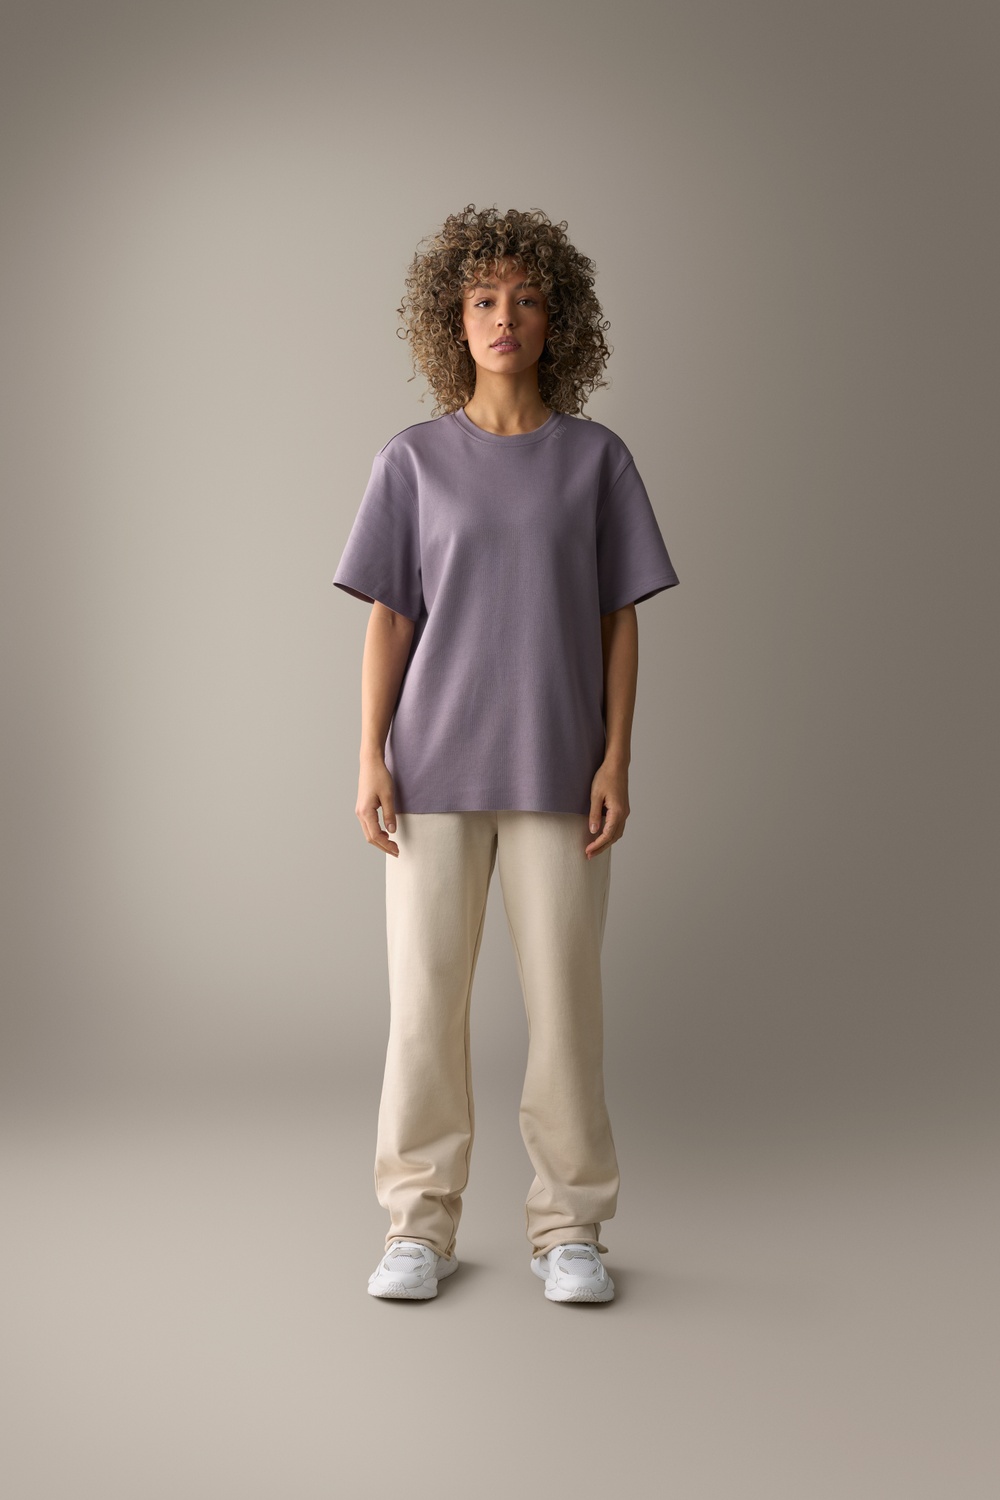 Unified T-shirt Purple, Unified Sweat Pants Beige